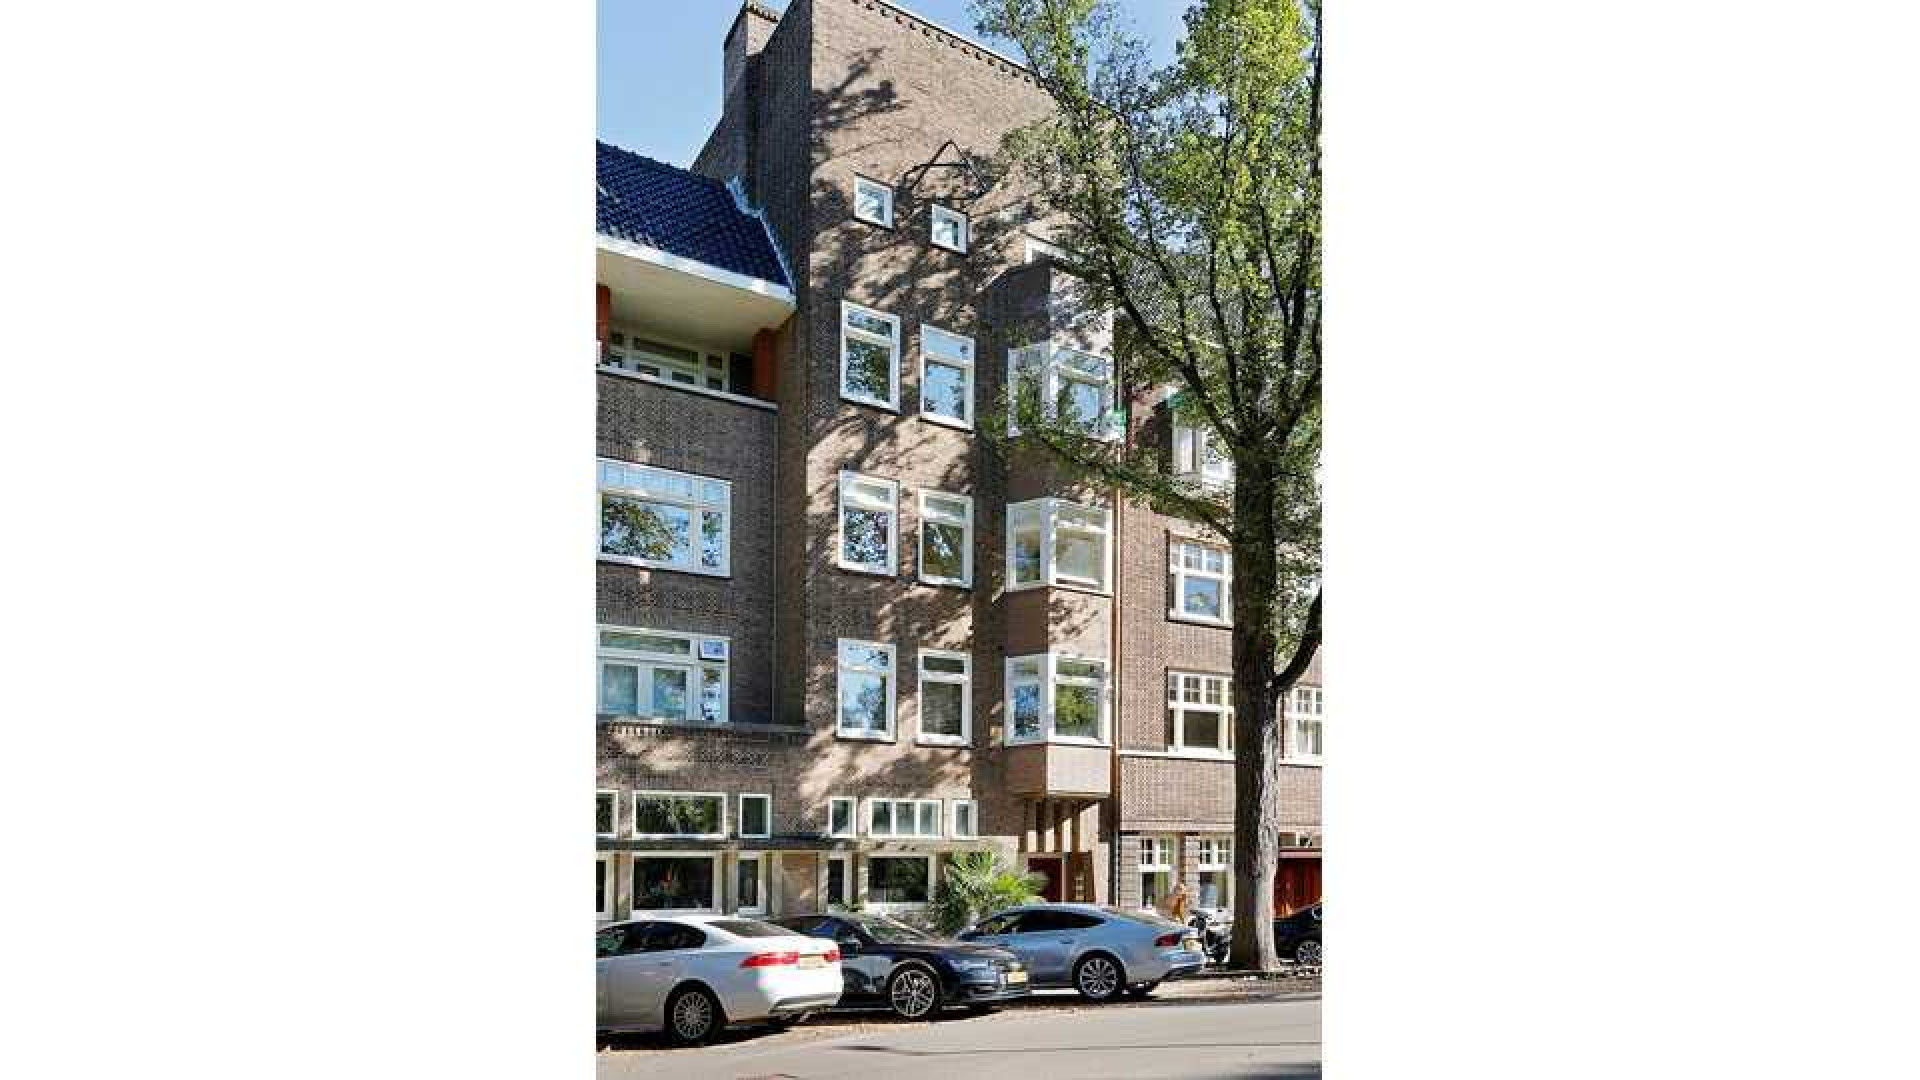 Marvin Breukhoven zoekt huurder voor zijn luxe driekamer appartement in Amsterdam Zuid. Zie foto's